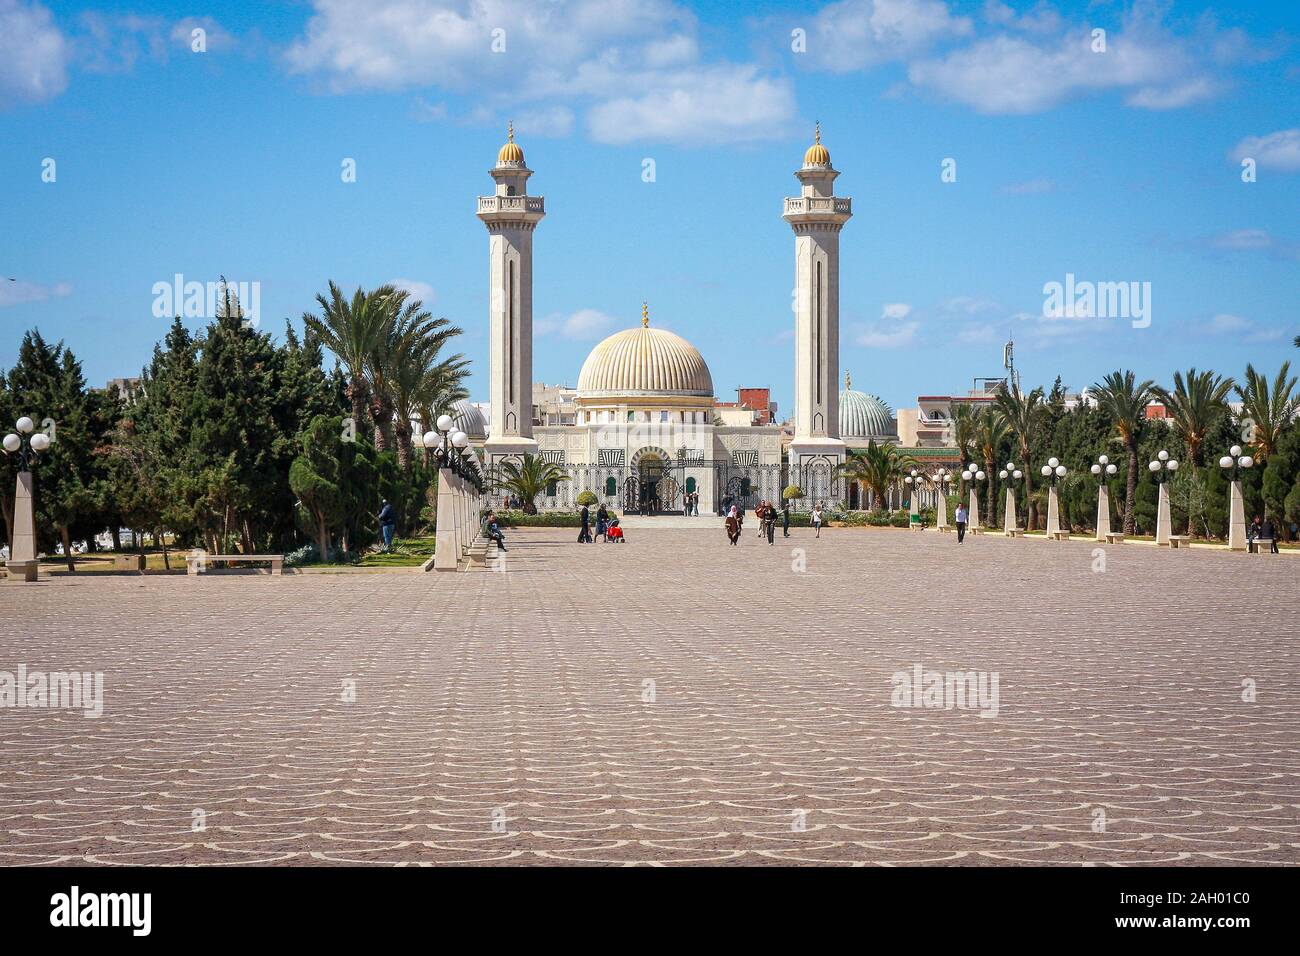 Das Bourguiba-Mausoleum ist ein monumentales Grab in Monastir, Tunesien, das die Überreste von Präsident Habib Bourguiba, dem Vater der tunesischen Unabhängigkeit, enthält Stockfoto